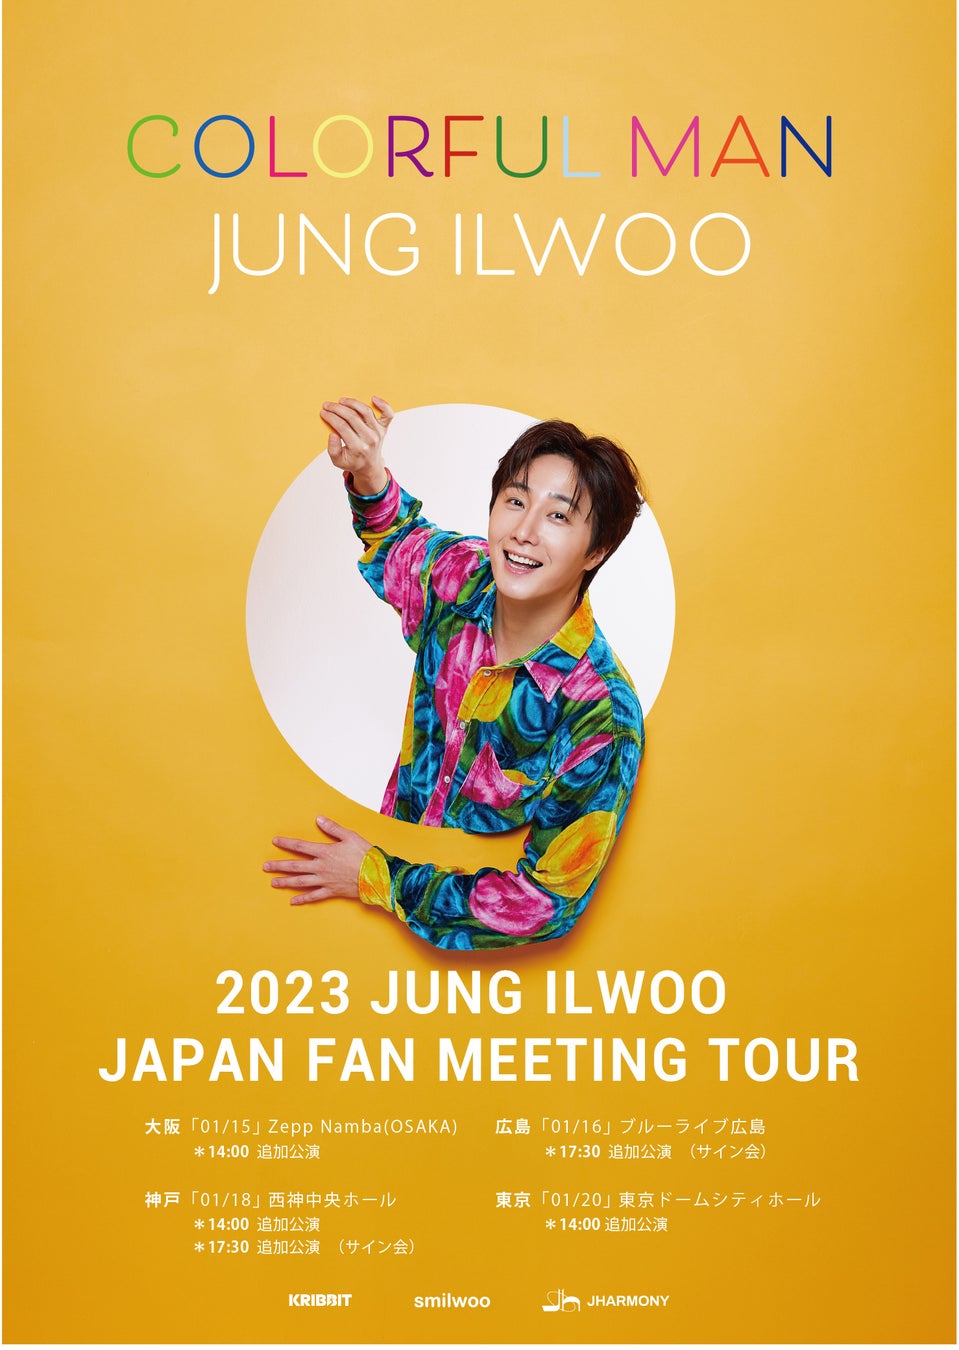 チョン・イル追加公演 2023 JUNG IL WOO JAPAN FAN MEETING TOUR [COLORFUL MAN]